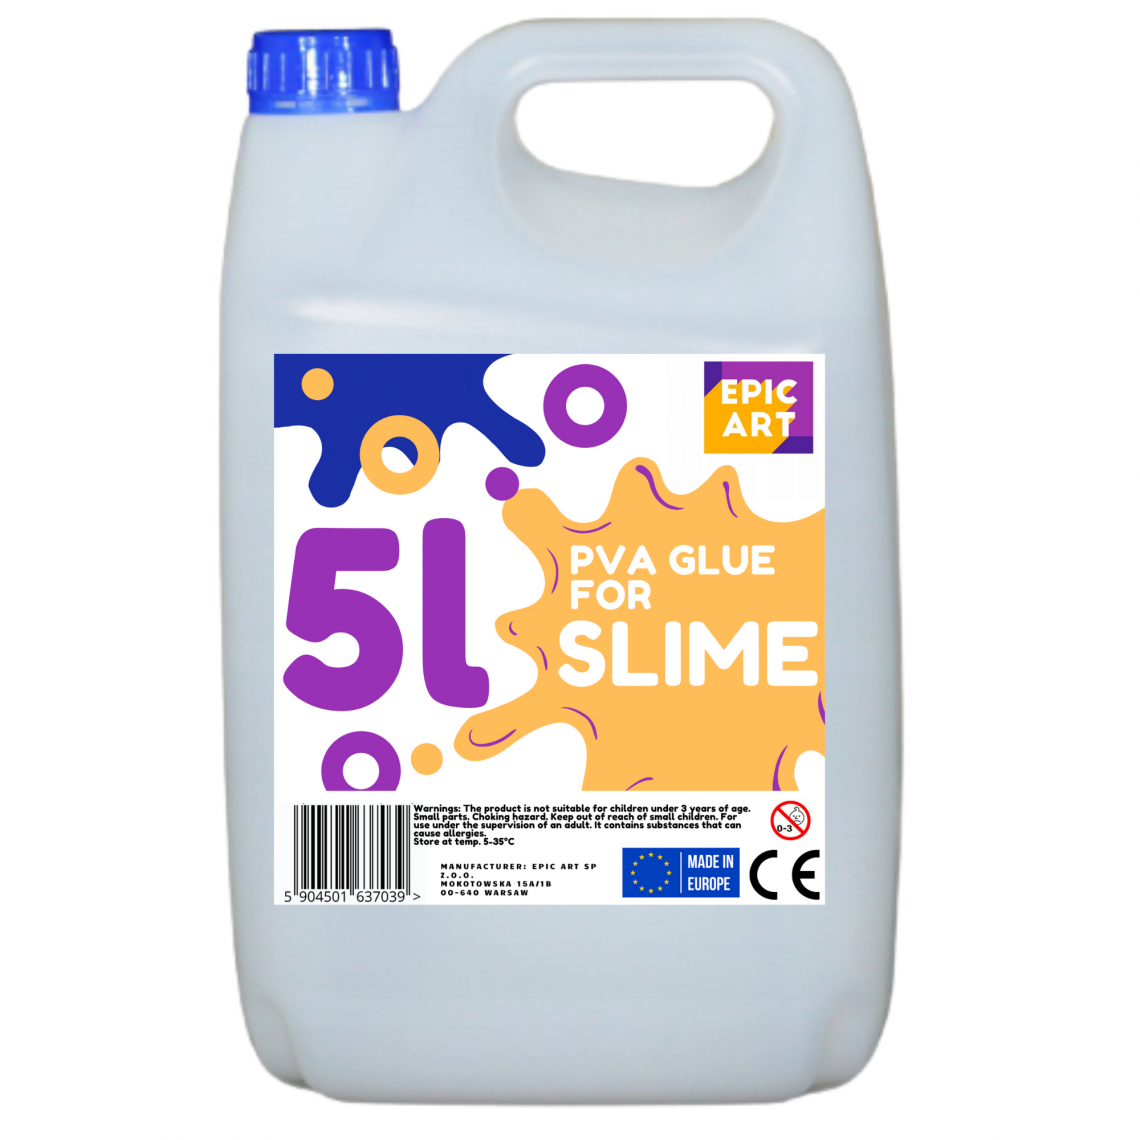 Sans Marque - Adhésif PVA transparent, 5L pour Slime, 5000 ml - Epic Art - Colle & adhésif